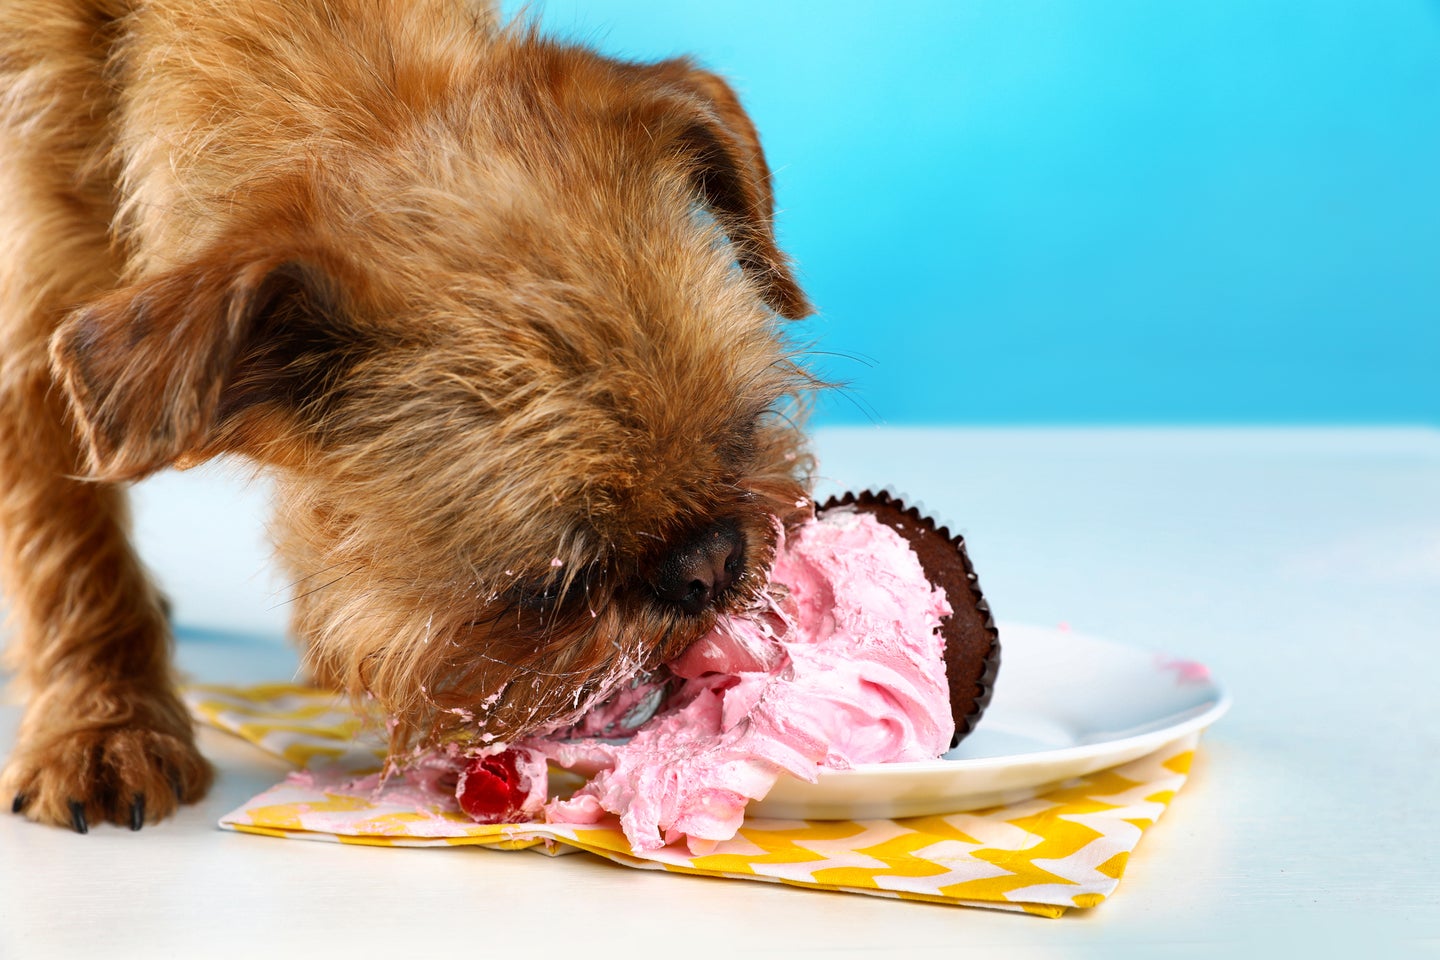 a brussels griffon dog eats a cupcake